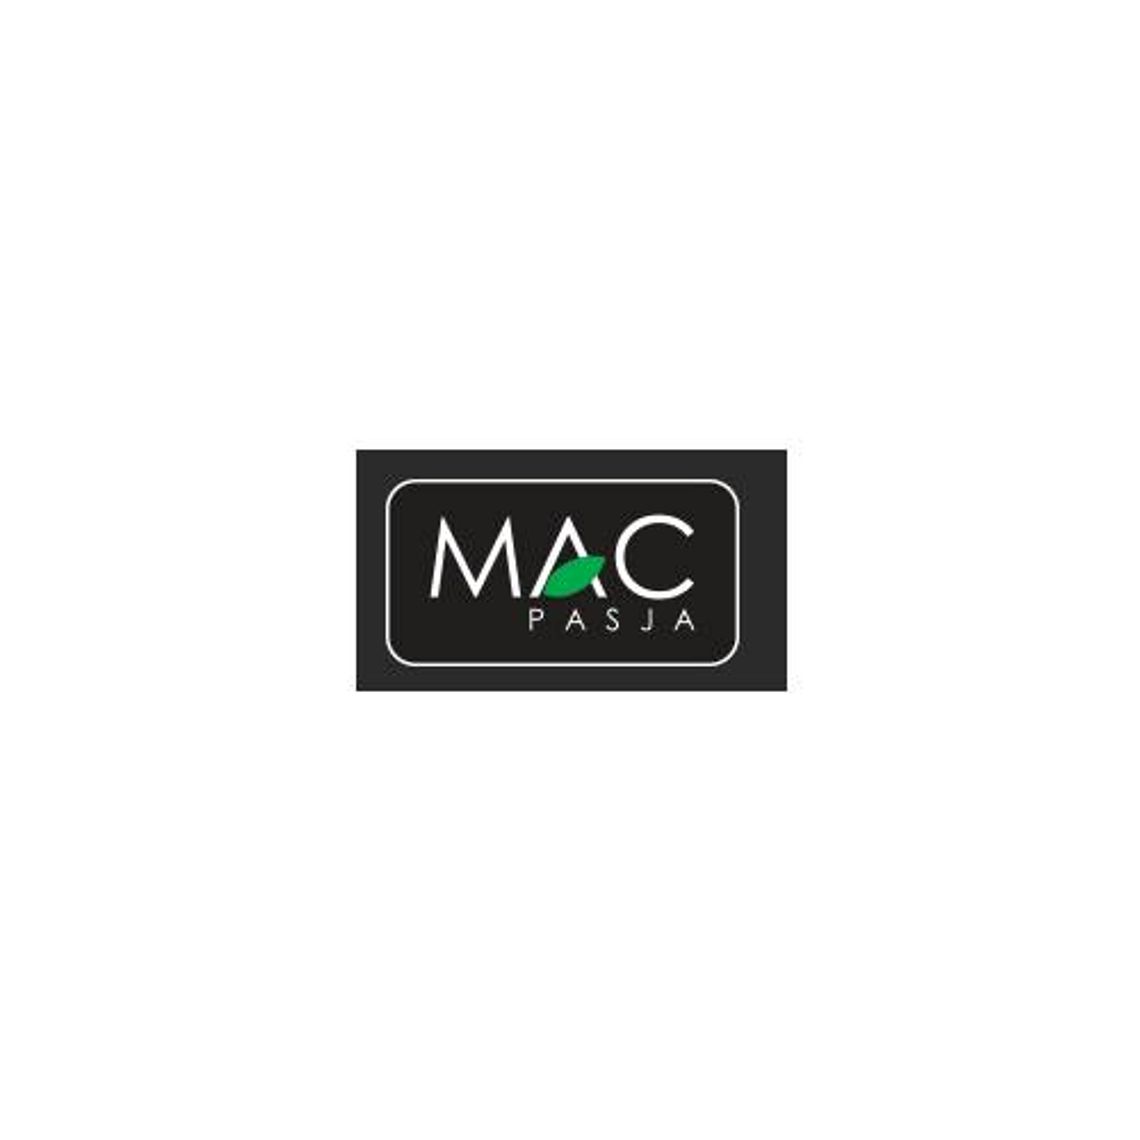 MacPasja - wyjątkowe produkty marki Apple